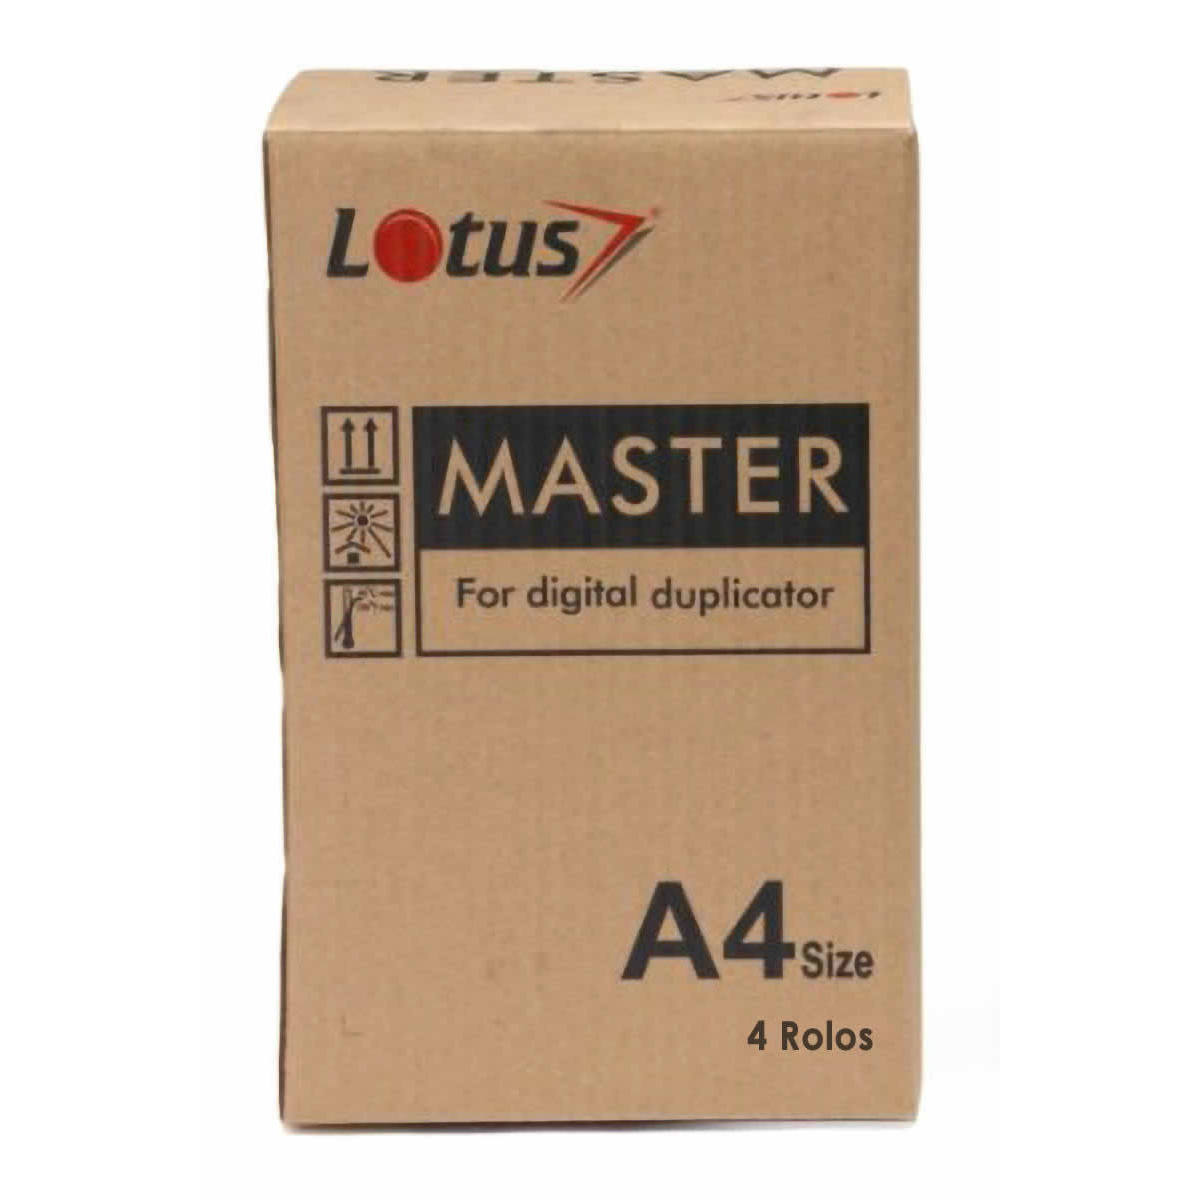 Master Térmico para Duplicador Digital DX2330 A4 240mm X 50m Lotus Compatível com Ricoh DX-2330 DX-2430 DX2430 / 4 Rolos